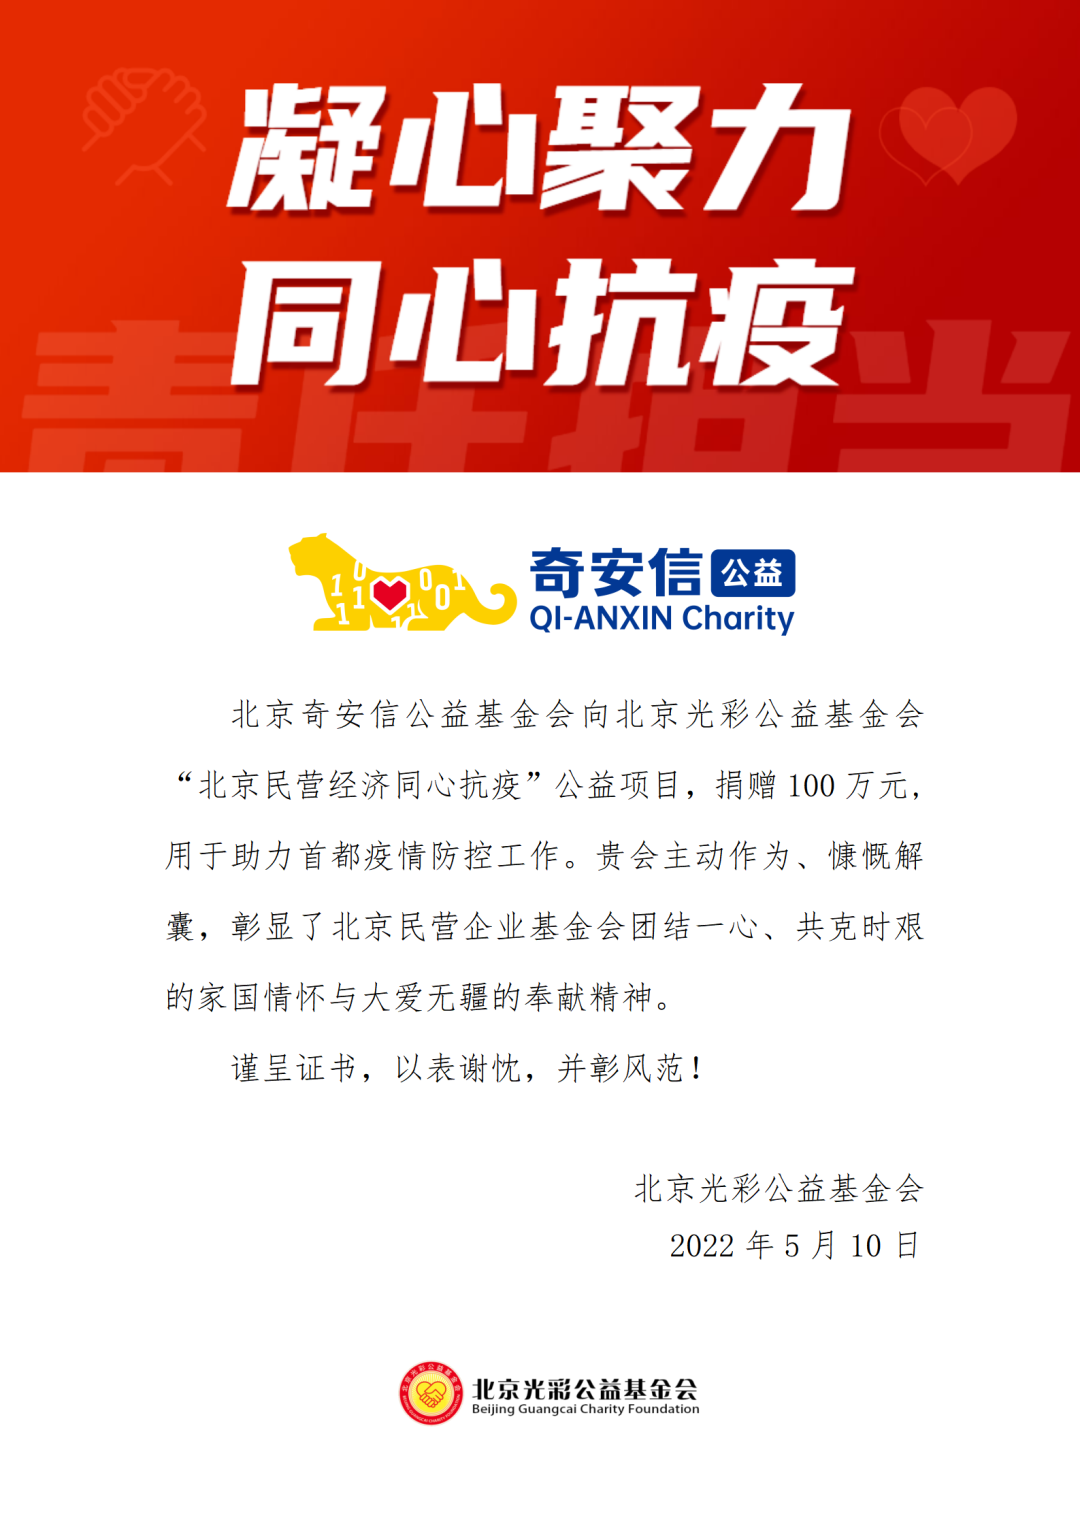 奇安信公益基金会向“北京民营经济同心抗疫”项目捐赠100万元